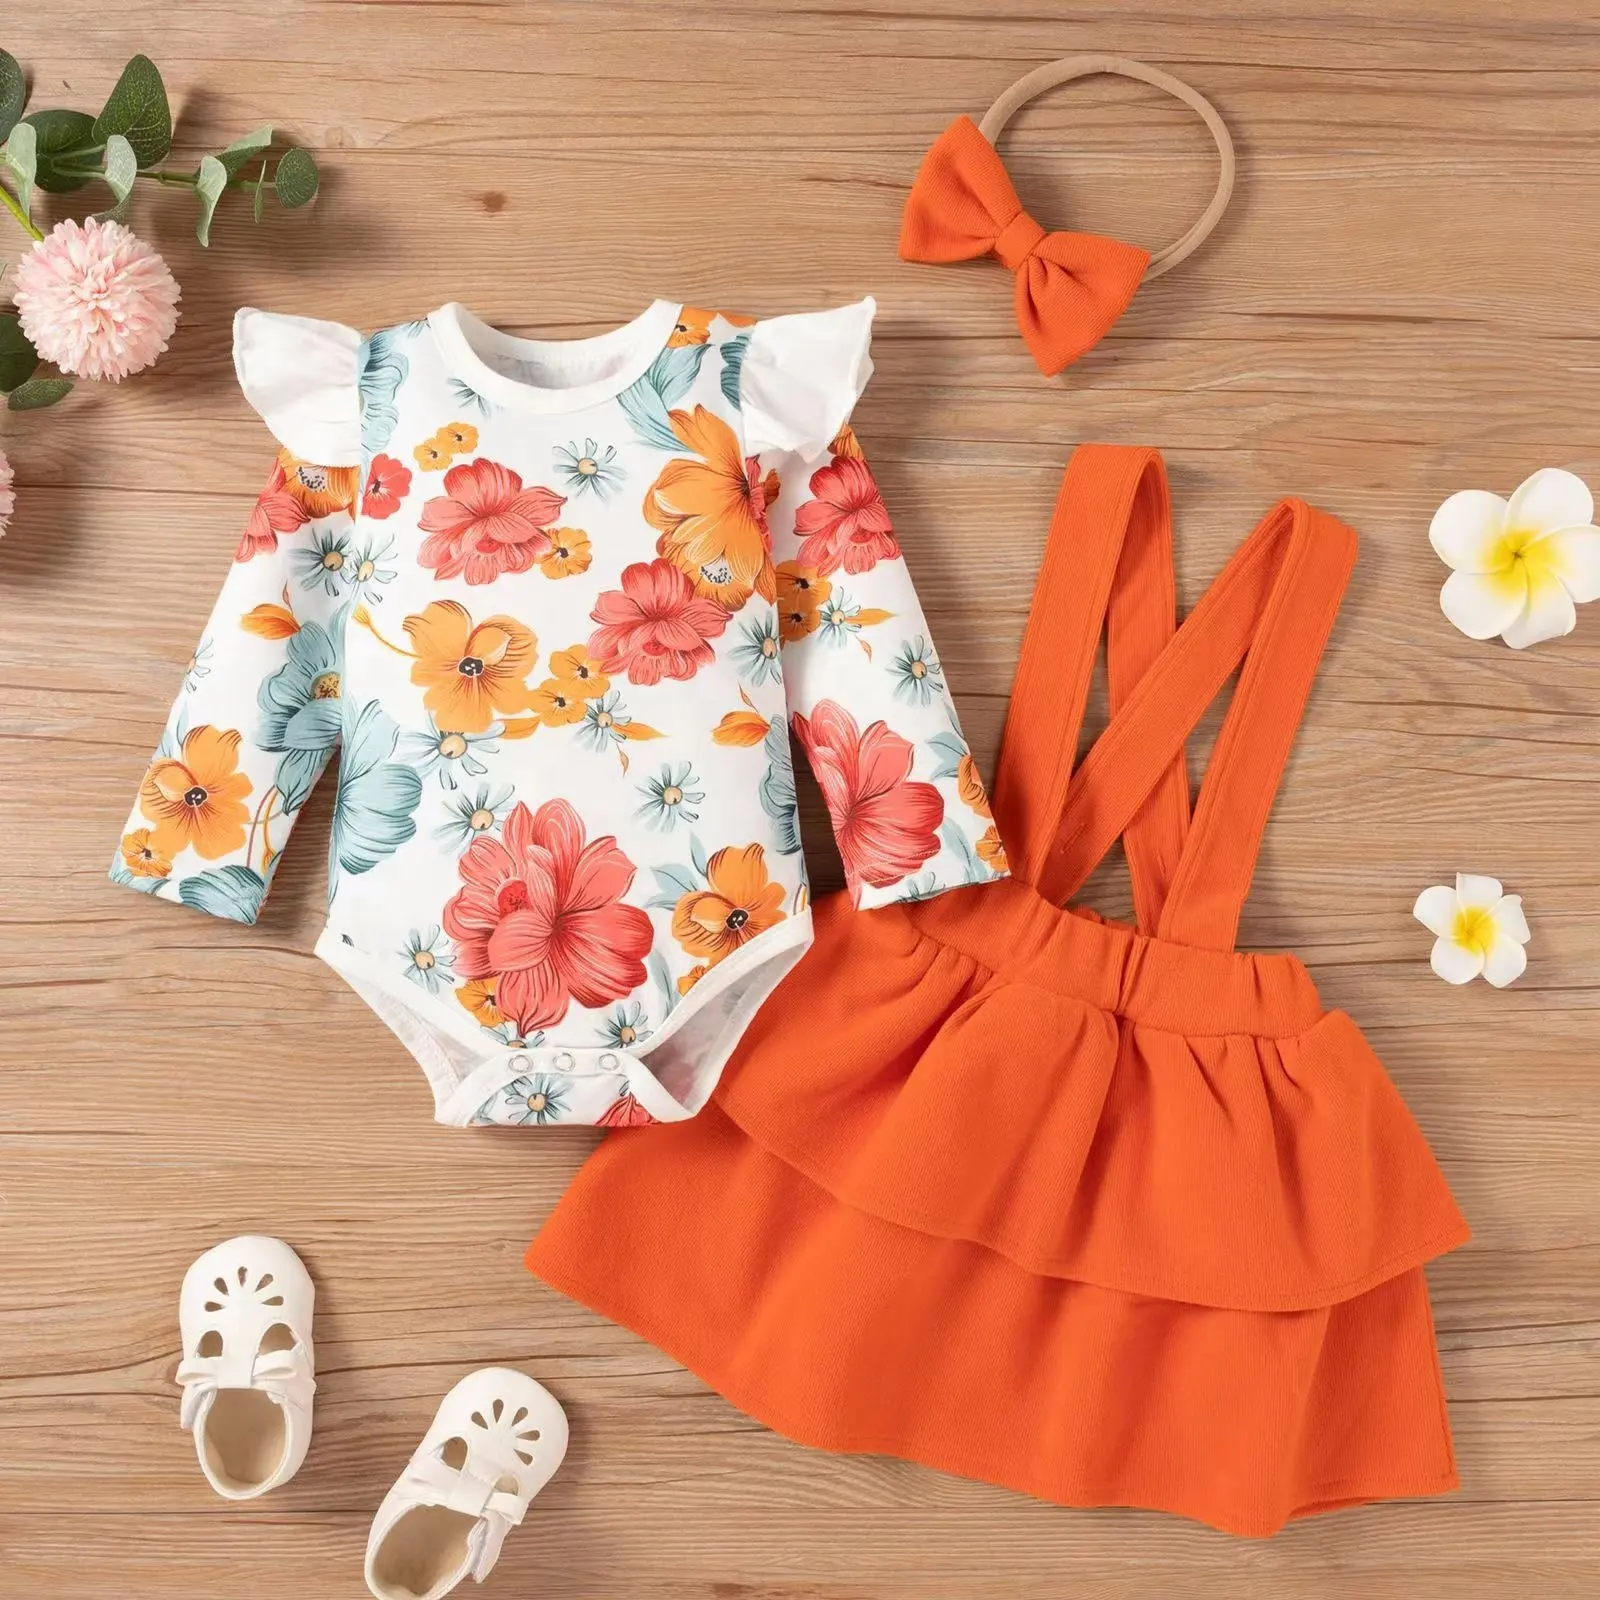 Conjunto de ropa para bebé de 3, 6, 9, 12 a 18 meses, conjunto de pelele Floral para bebé, conjuntos de ropa para bebé, vestido para niña, trajes de faldas para bebé